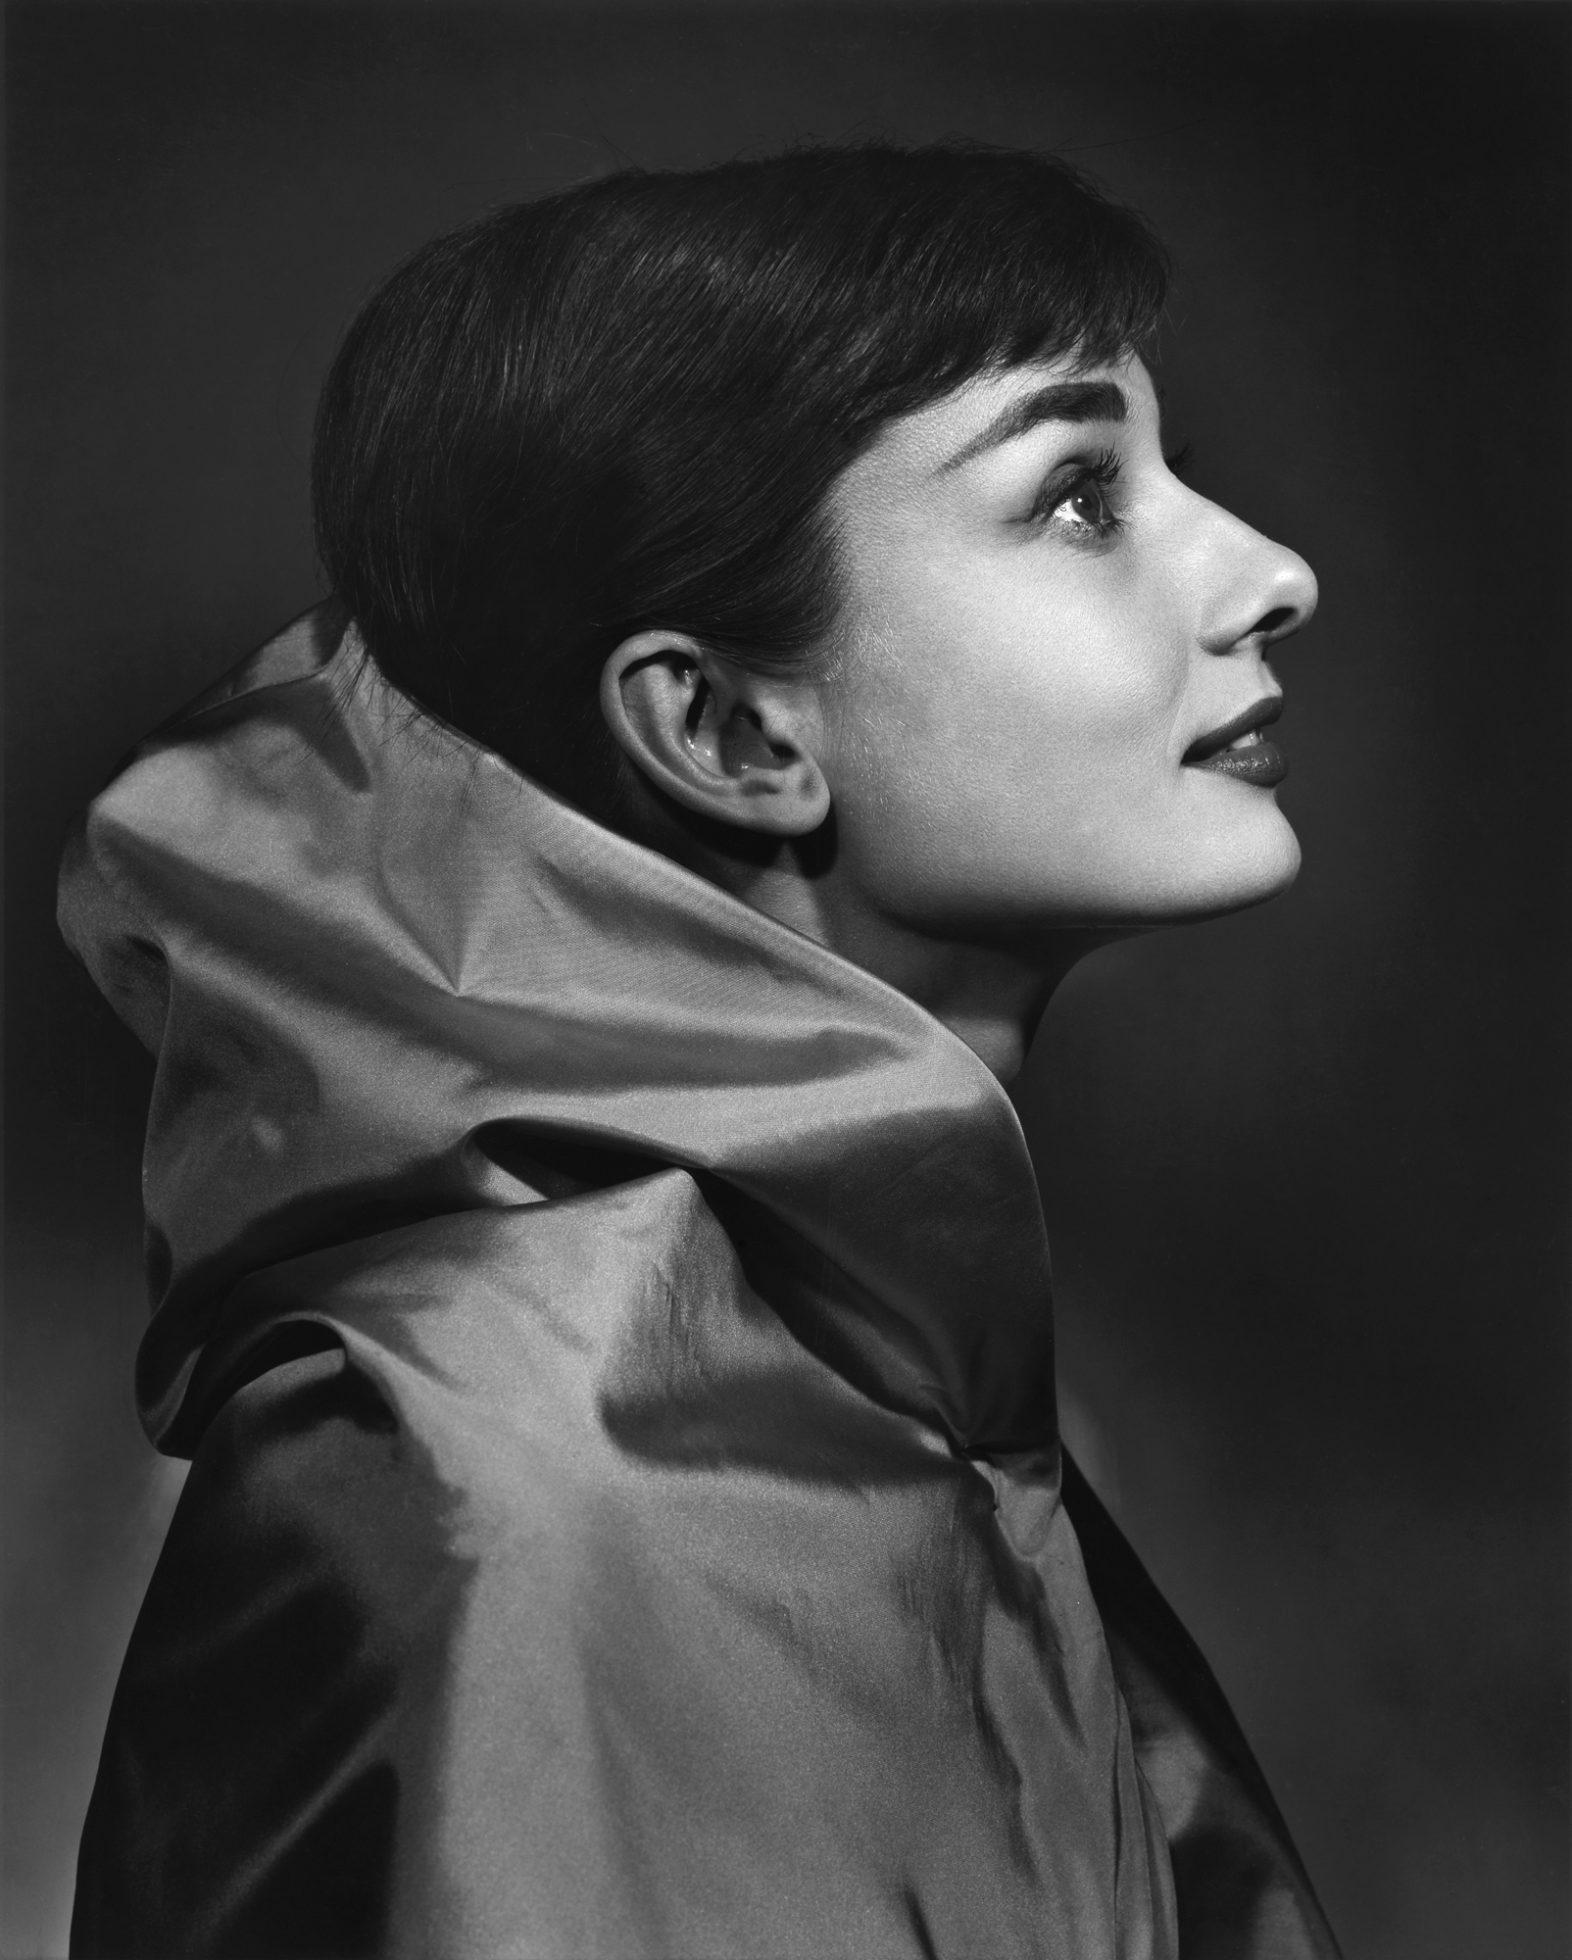 Audrey Hepburn, 1956 - Yousuf Karsh (Photographie de portrait)
Accompagné d'un certificat d'authenticité signé.
Tirage à la gélatine argentique
16 x 20 pouces
Provenance : Succession de Yousuf Karsh, Musée des Beaux-Arts de Boston

Yousuf Karsh